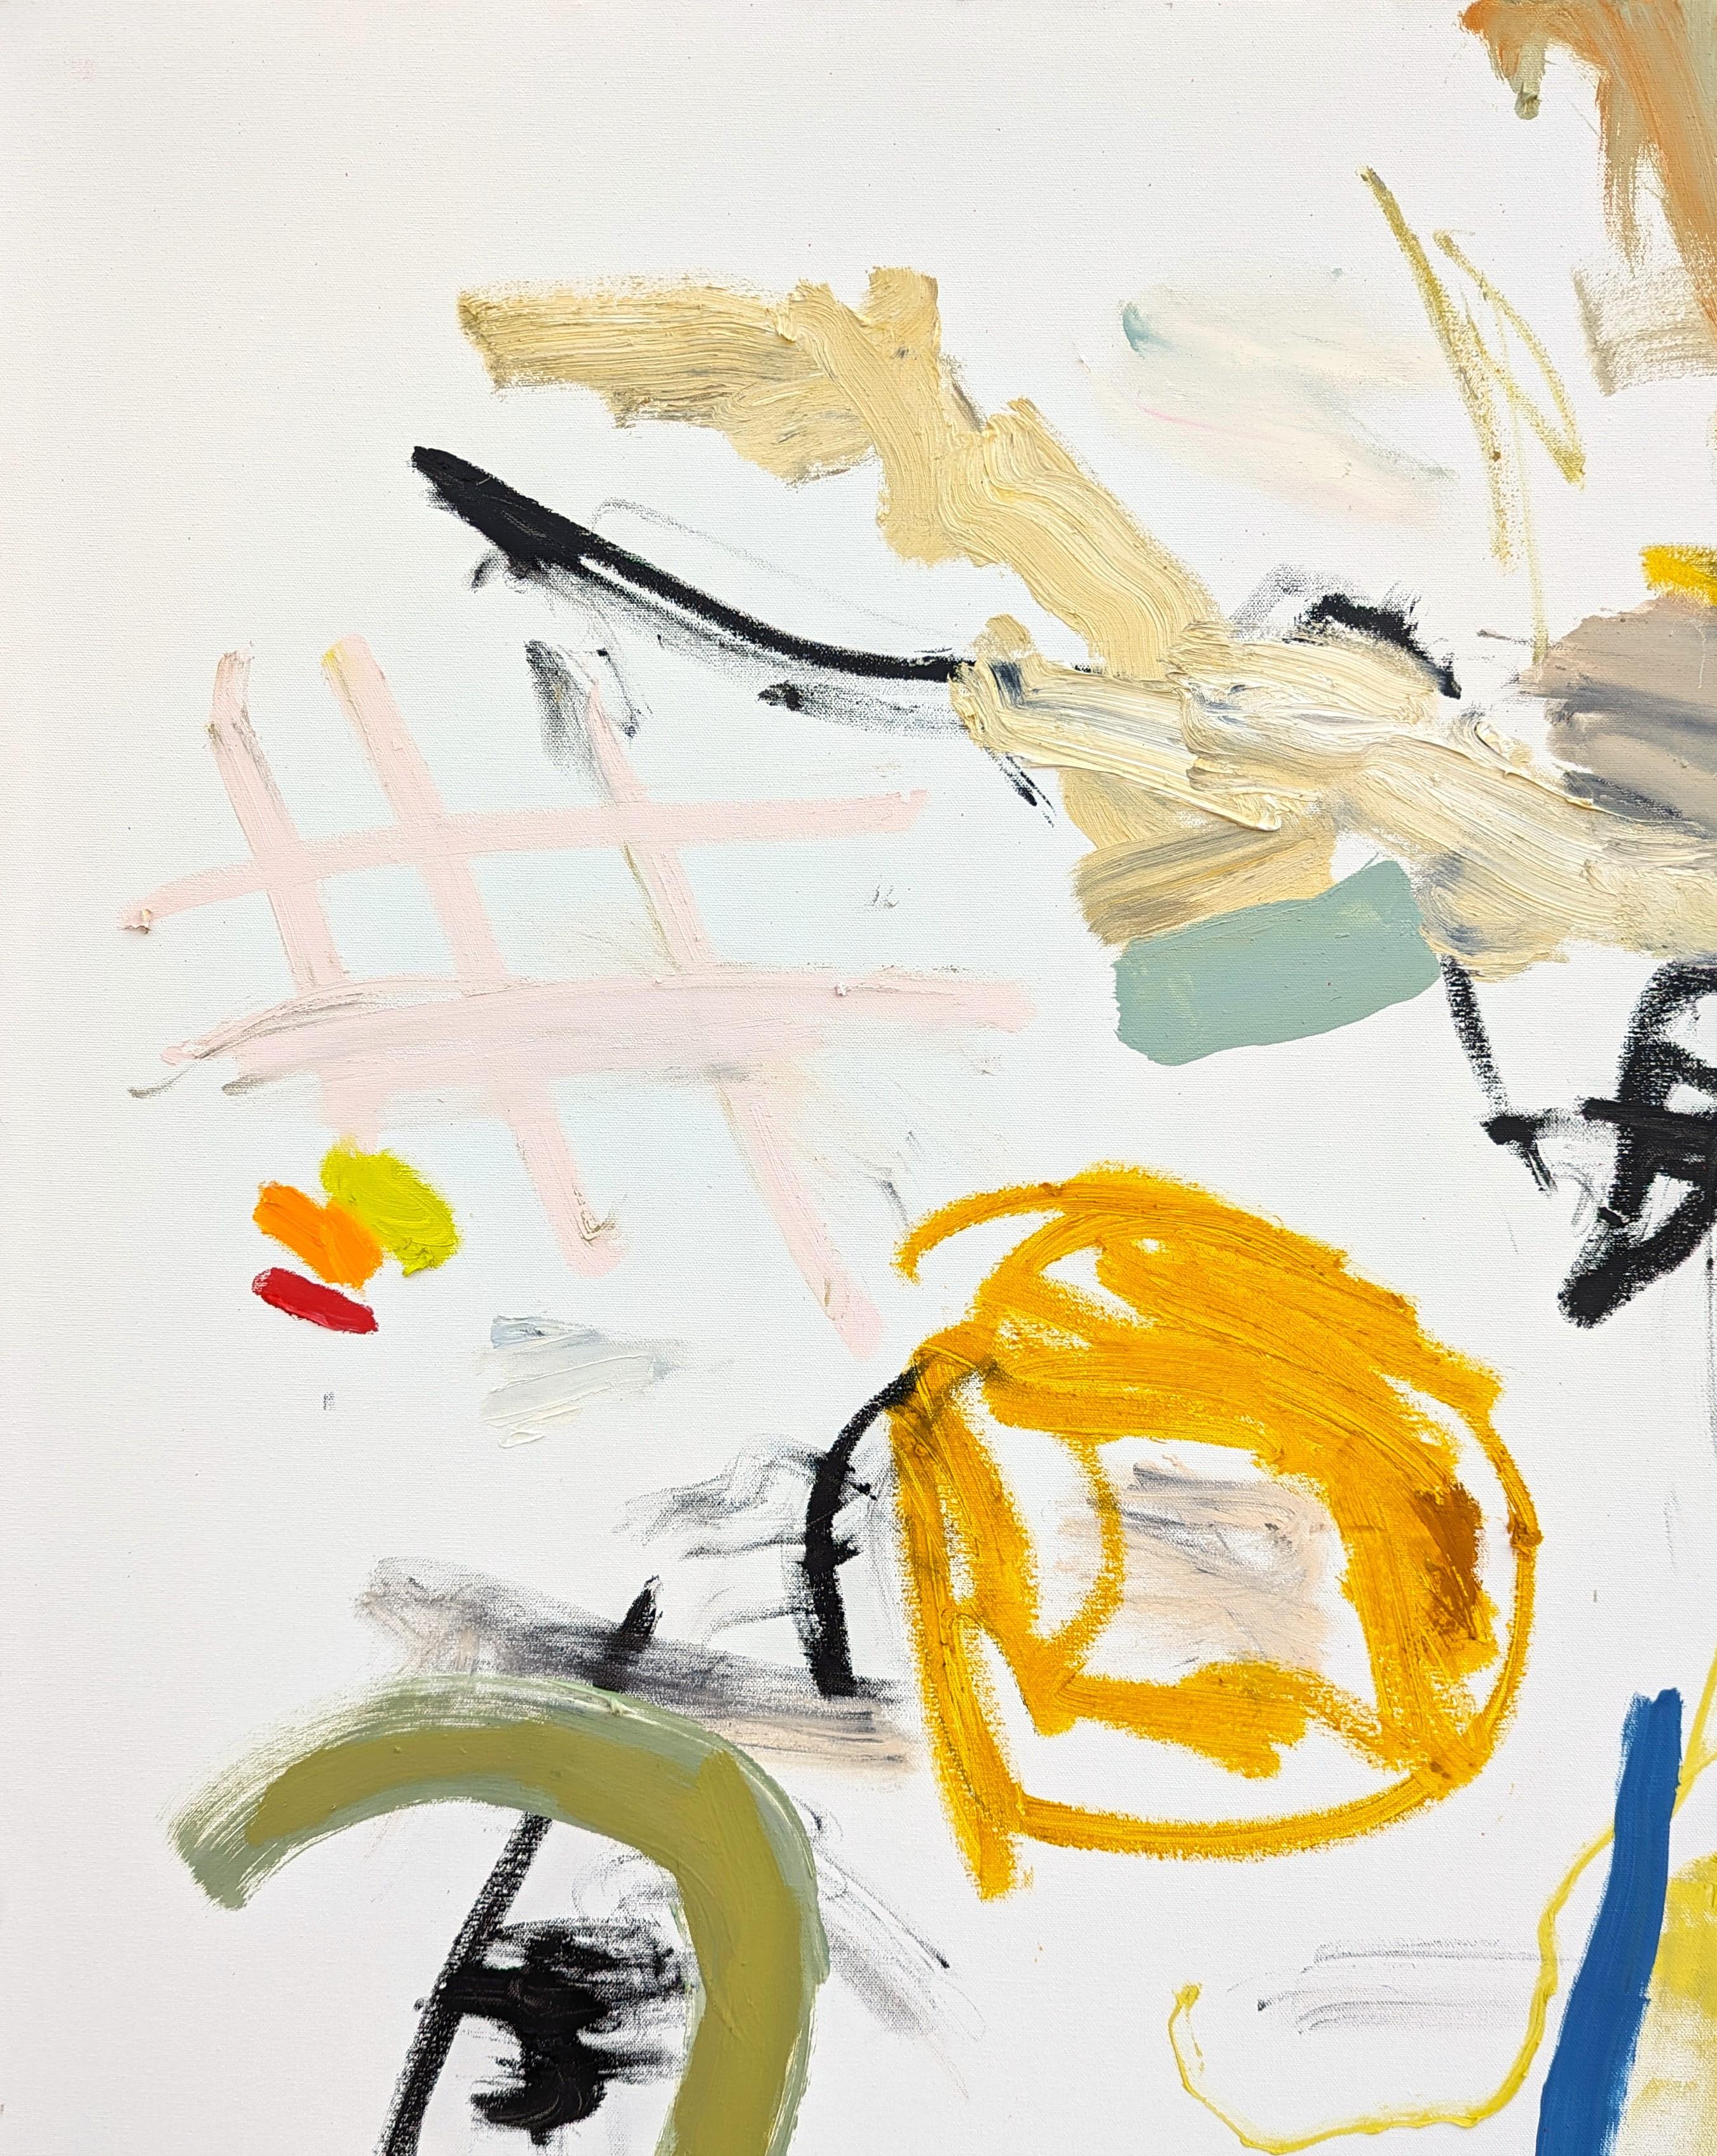 Abstraktes expressionistisches Ölgemälde des zeitgenössischen Künstlers Benji Stiles aus Houston. Das Werk zeigt gestische Zeichen in pastellfarbenem Orange, Gelb und Grün vor einem cremefarbenen Hintergrund. Derzeit ungerahmt, aber Optionen sind